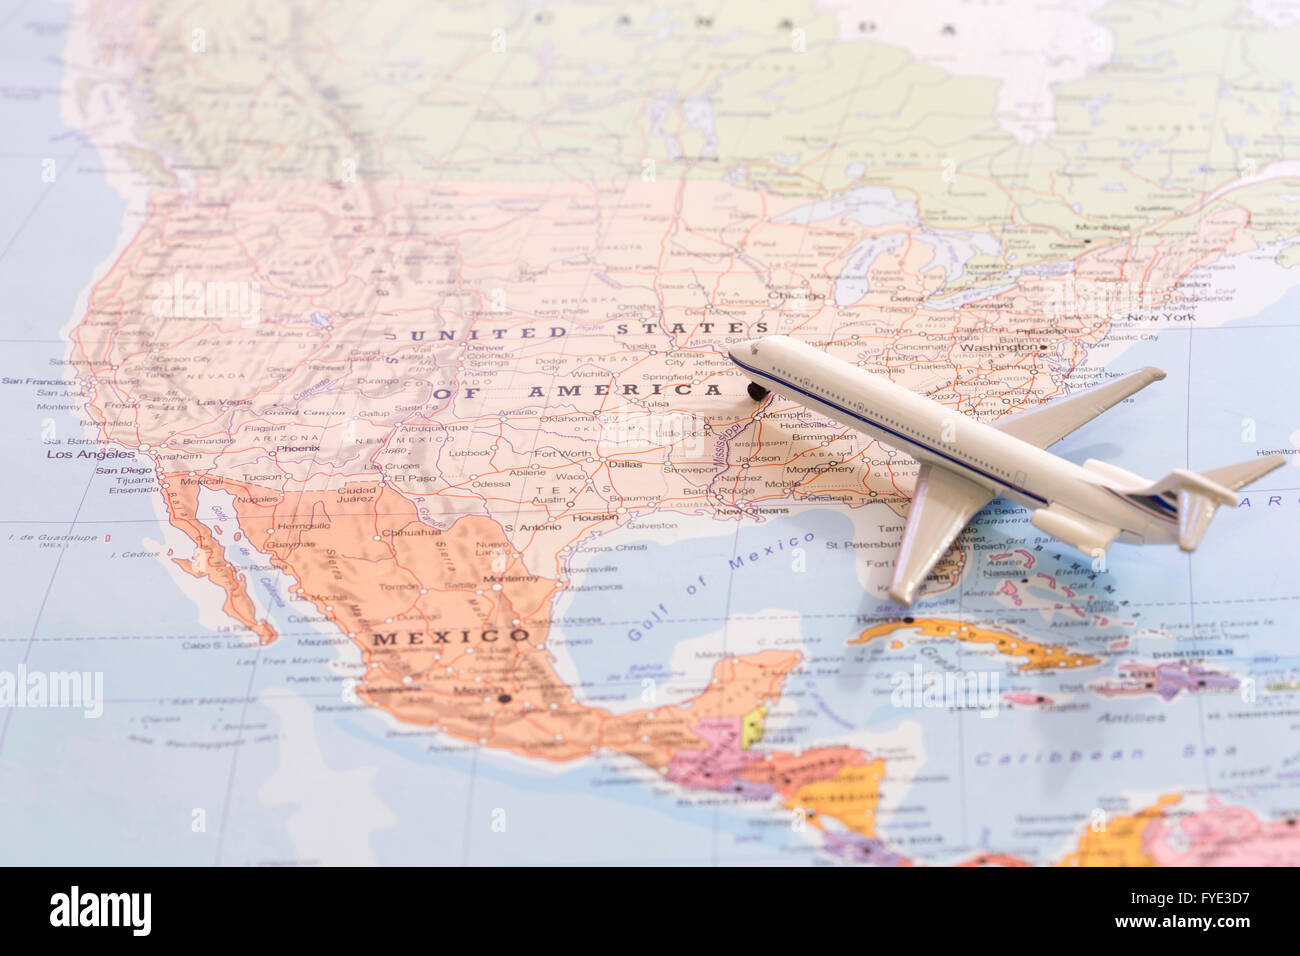 Miniatur eines Passagier-Flugzeug fliegen auf der Karte der Vereinigten Staaten von Amerika aus Süd-Ost. Konzeptbild für Tourismus und t Stockfoto